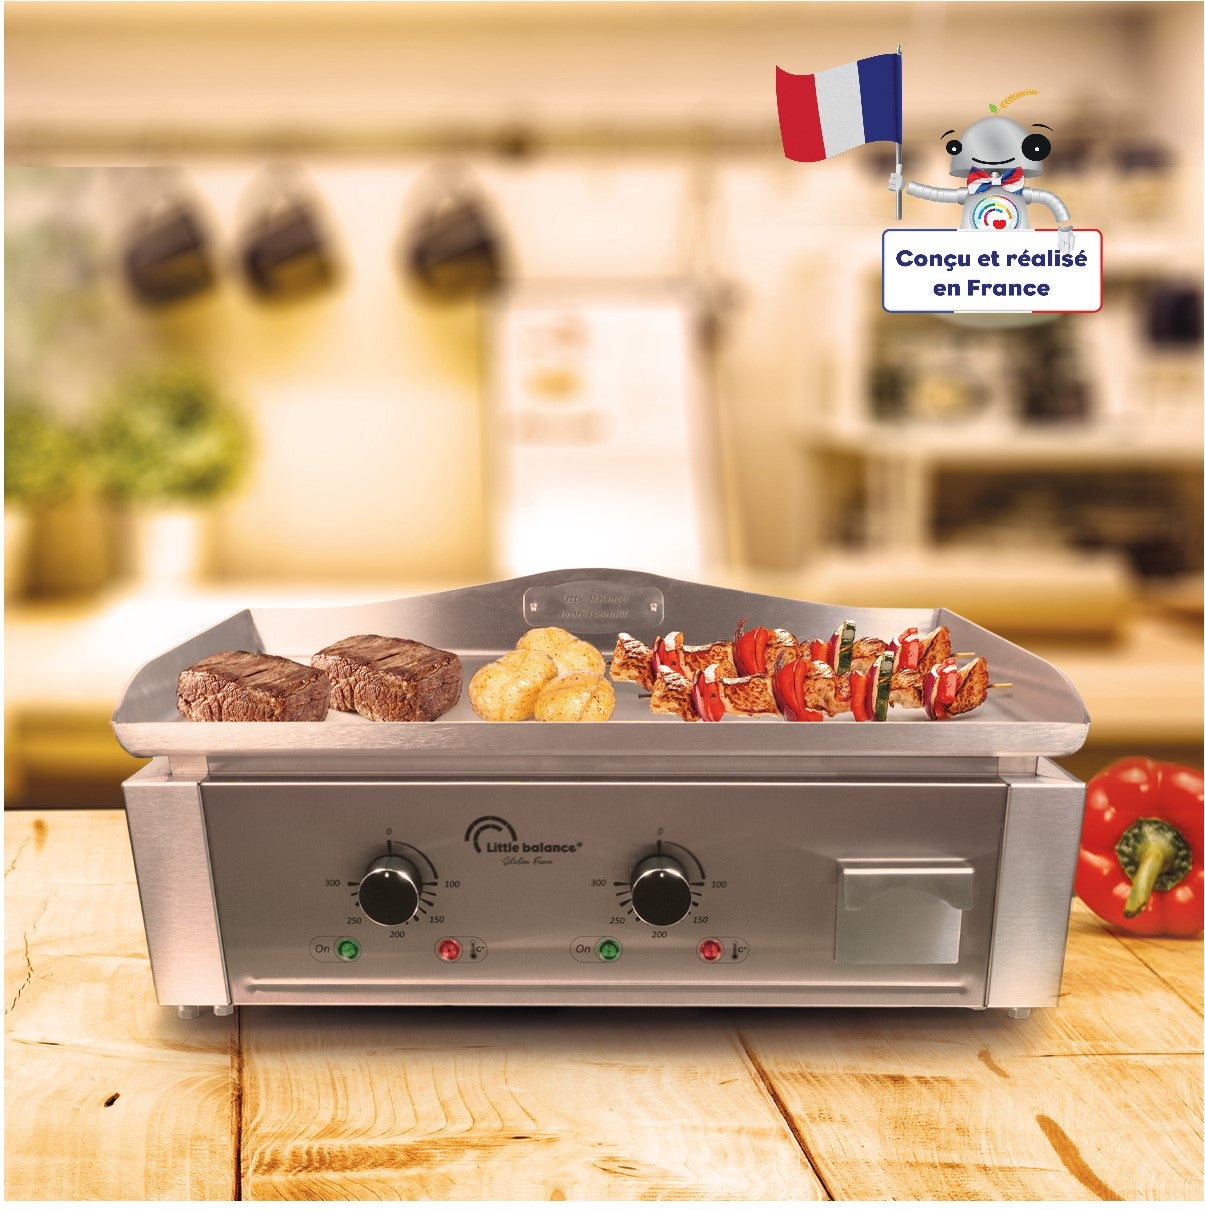 3500 W Plancha électrique professionnelle LITTLE BALANCE 8473 Aquitaine Pro Plus Fabrication française 2 zones de cuisson Couvercle Tout Inox 